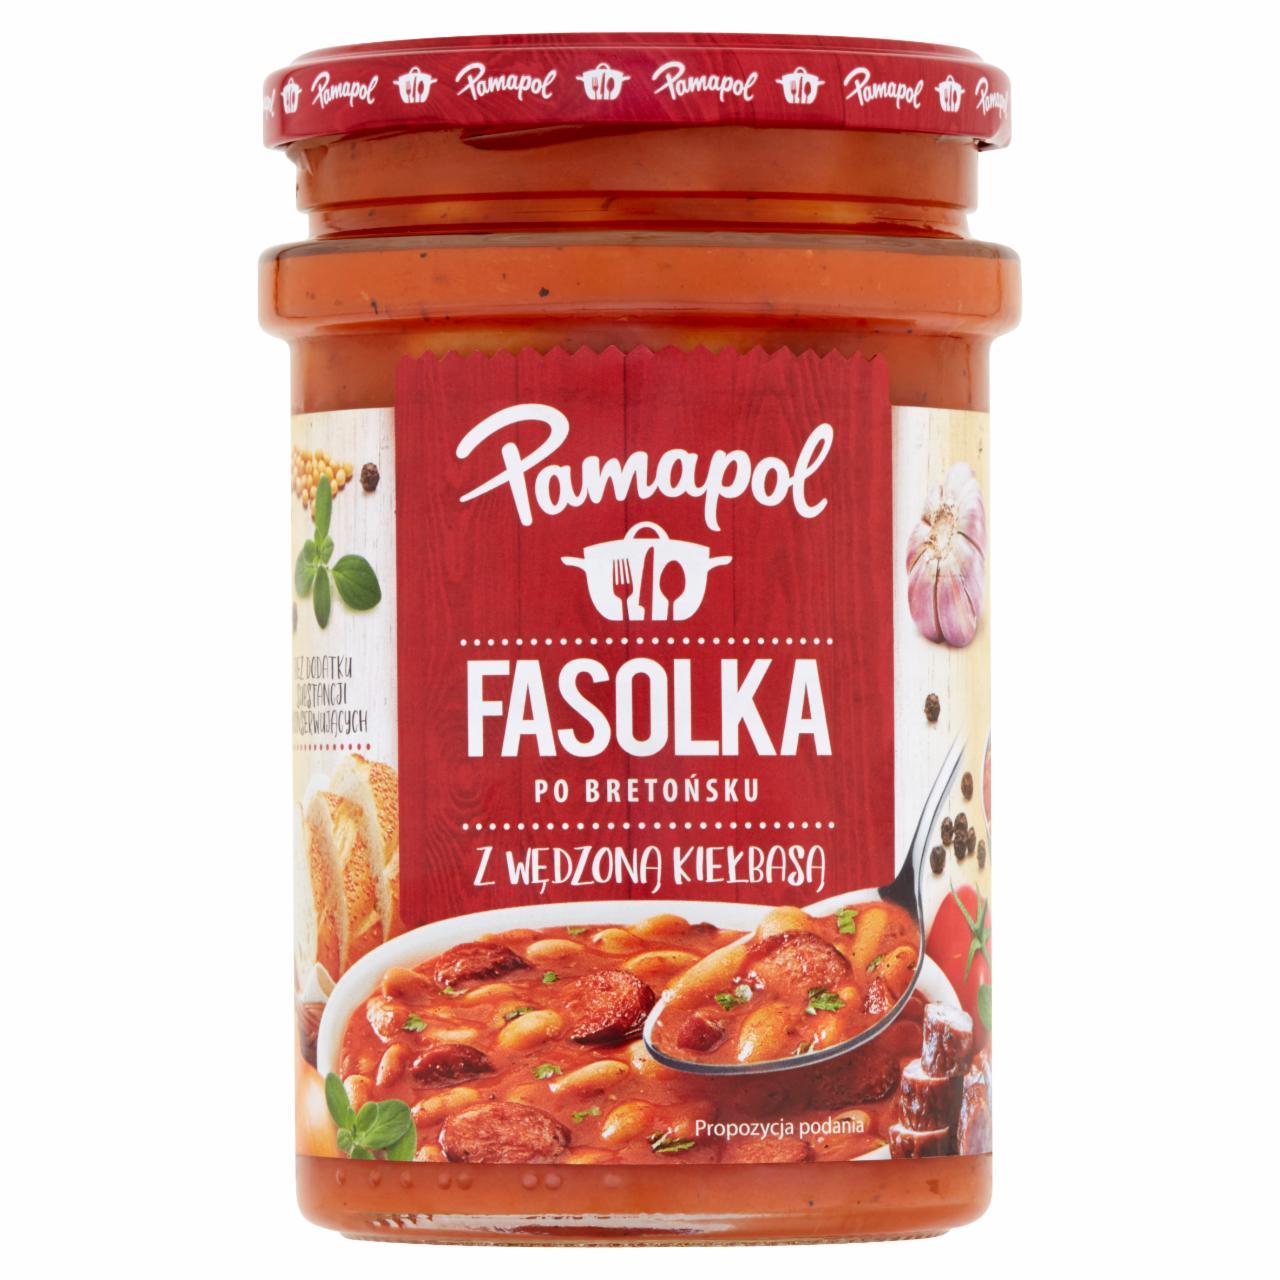 Фото - консервированная фасоль по-британски с колбасками Fasolka Pamapol